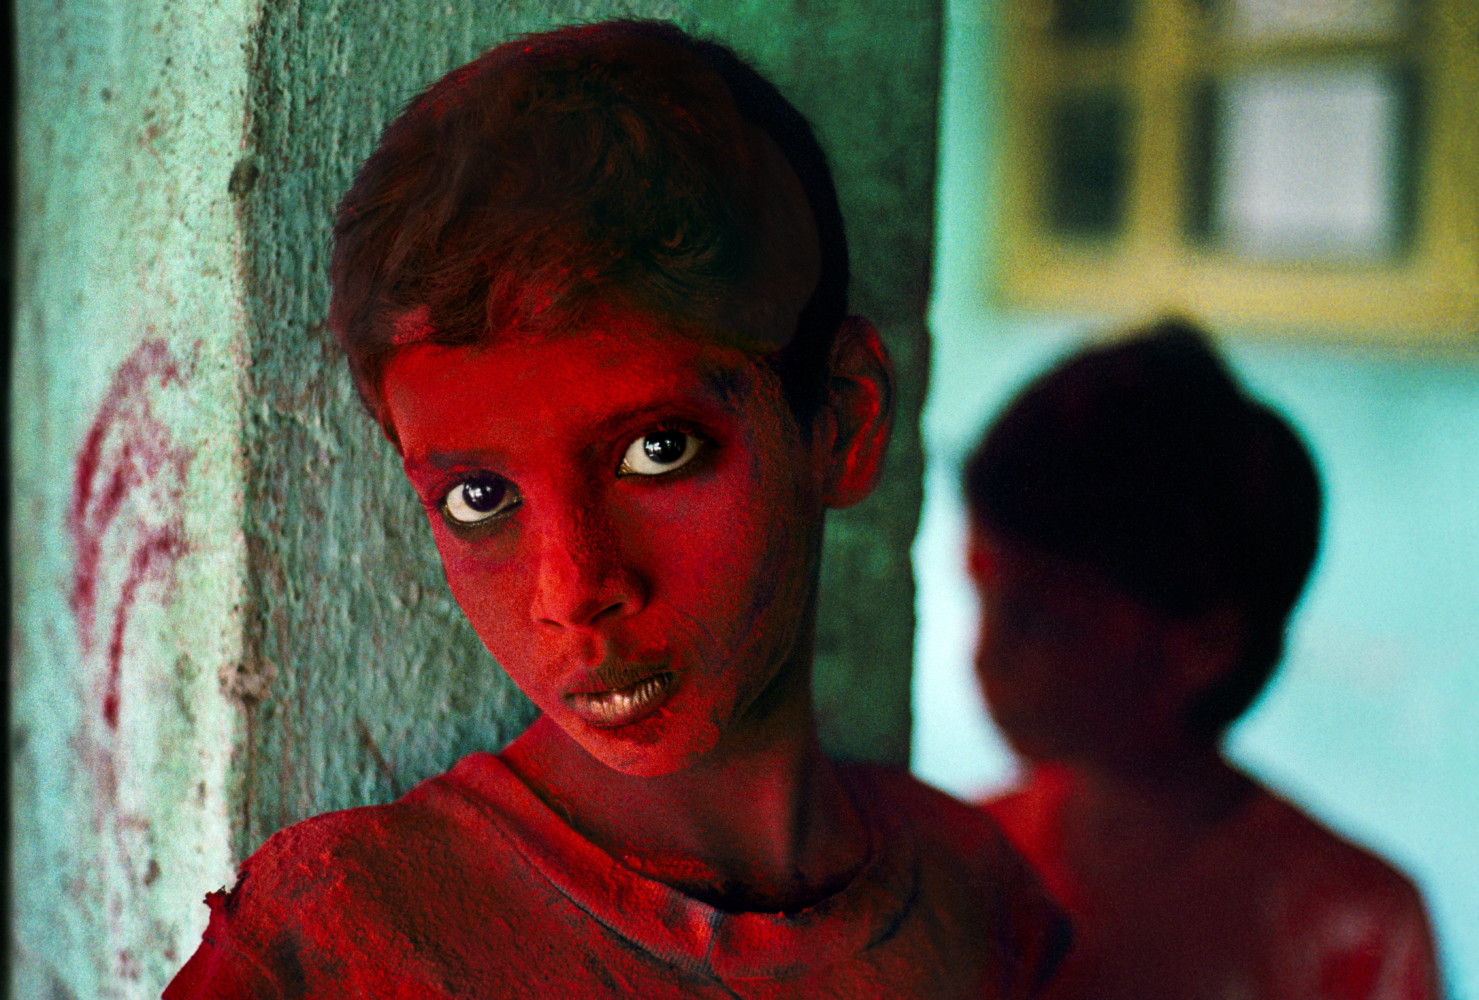 INDIA. Mumbai (Bombay). 1996. Red Boy during Holi festival.